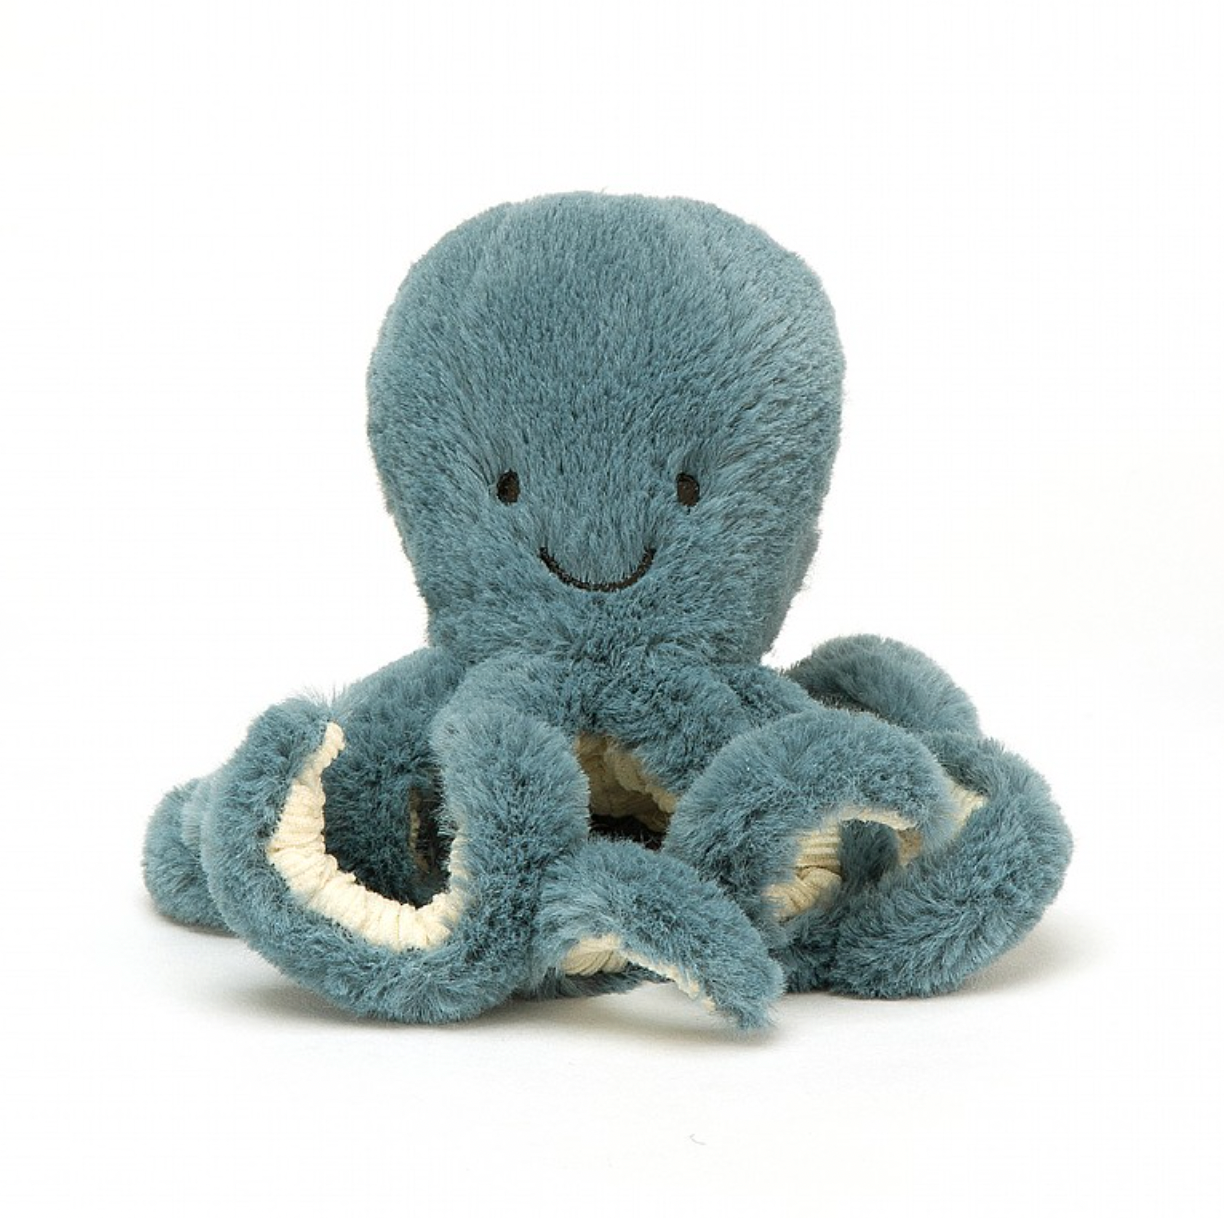 Storm Octopus - Tiny